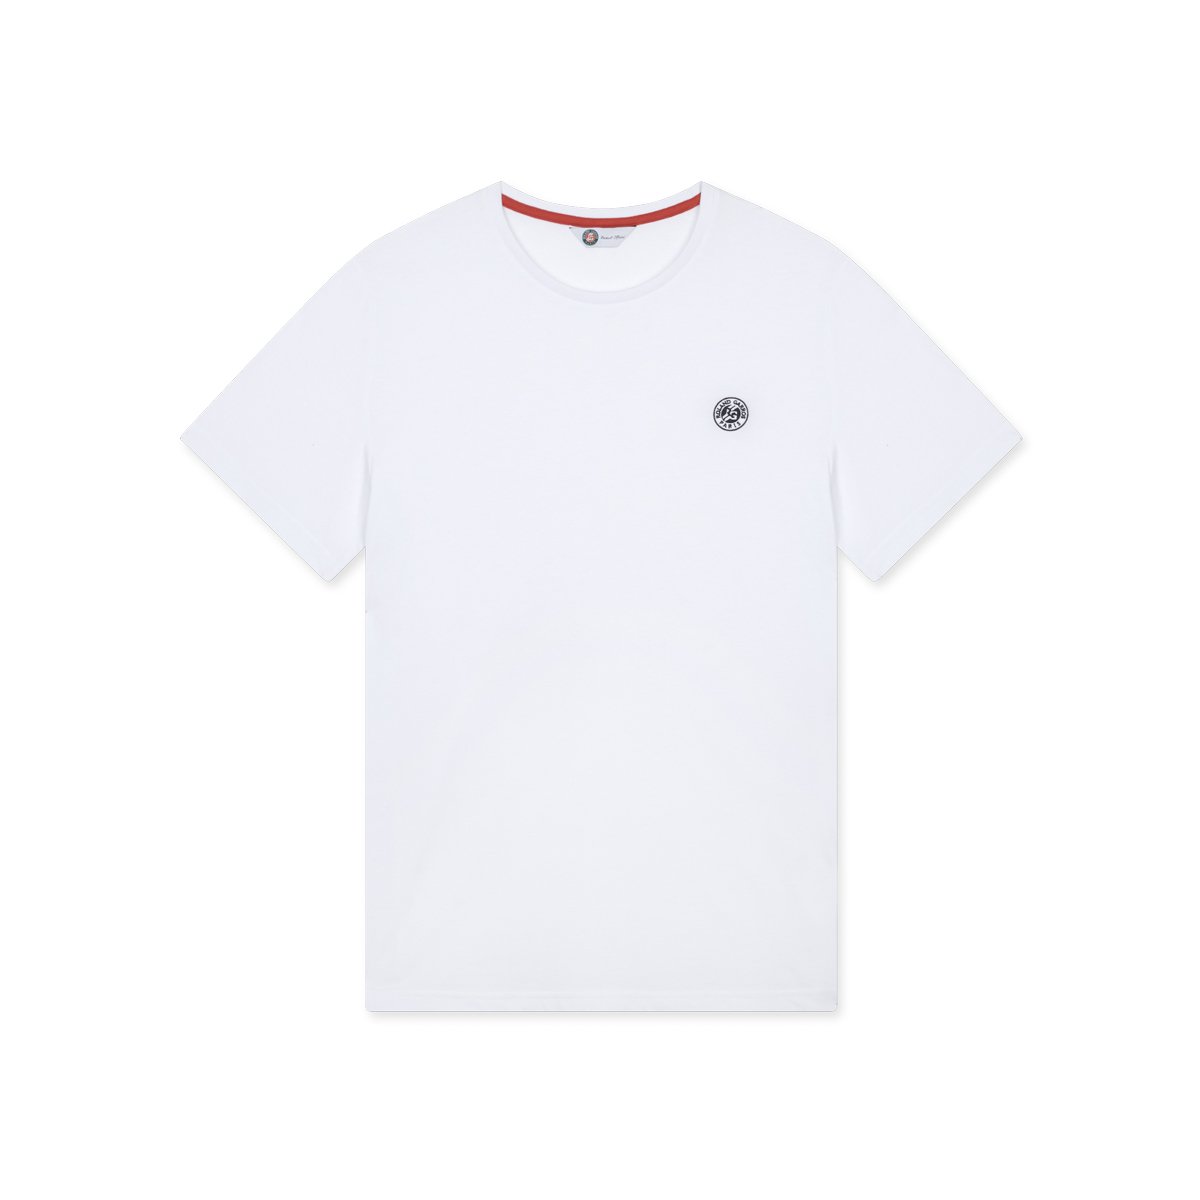 Roland-Garros Unisex Essentiels t-shirt - White | Roland-Garros Store